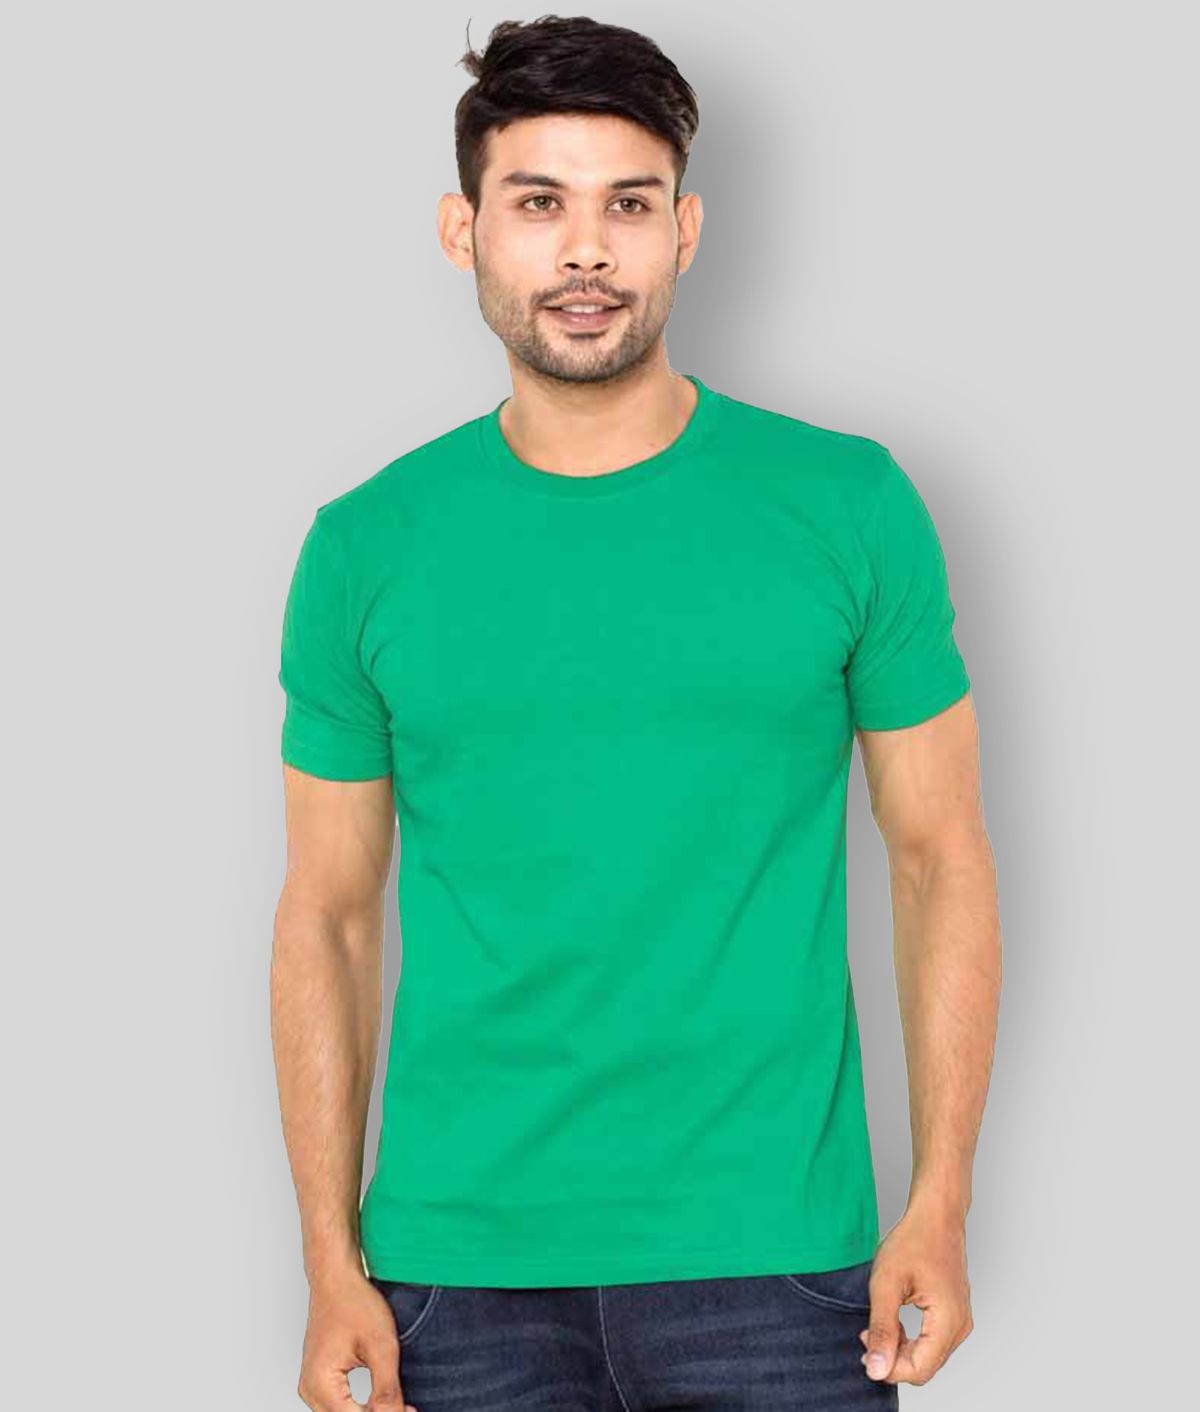     			FLEXIMAA - Green Cotton Regular Fit Men's T-Shirt ( Pack of 1 )